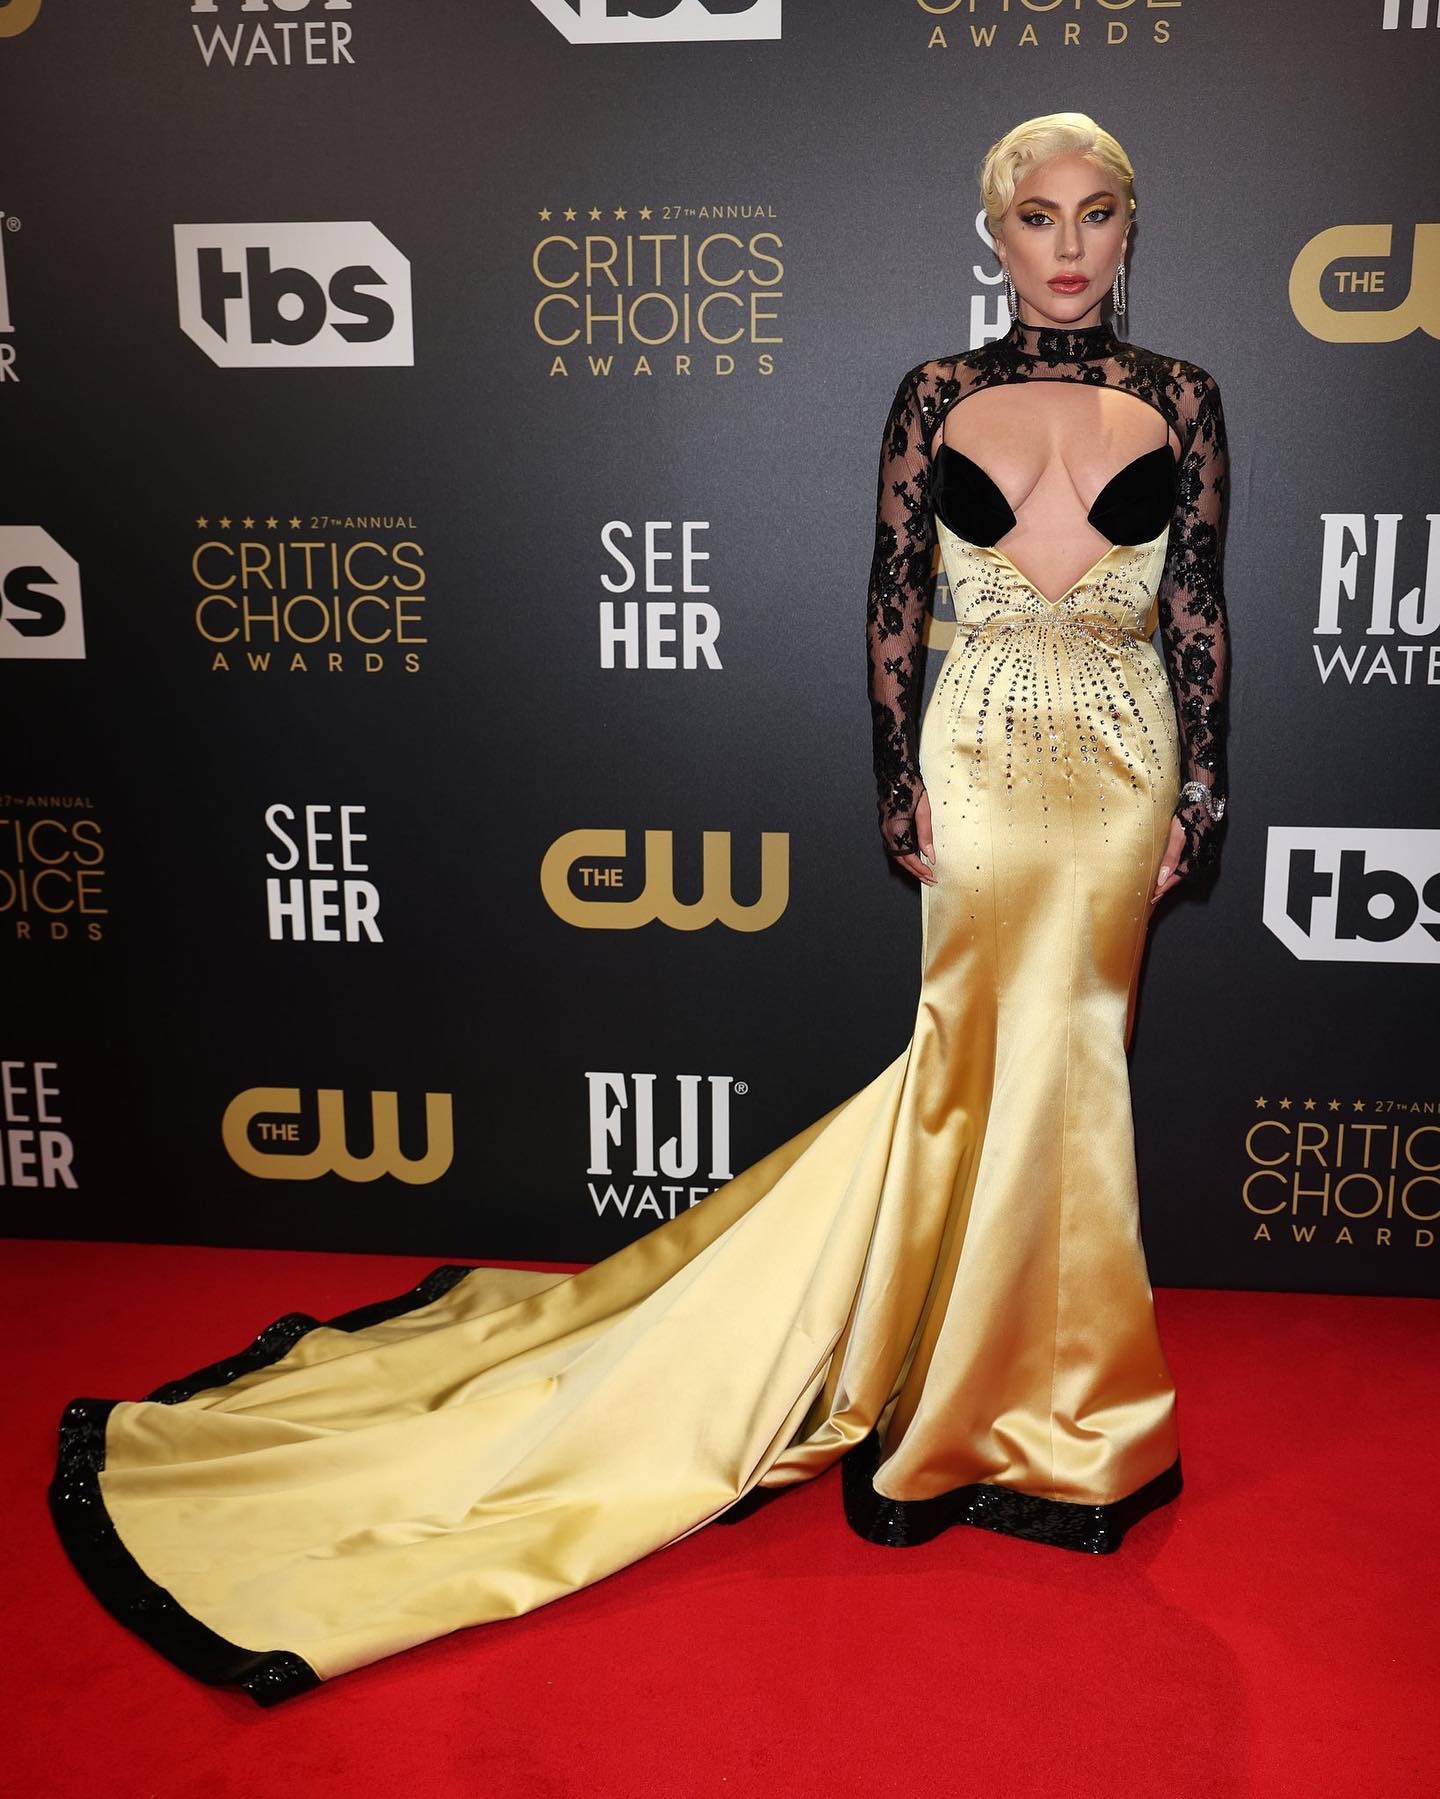 Lady Gaga Tits TheFappening.Pro 3 - Lady Gaga Big Tits At The Critics Choice Awards (7 Photos)